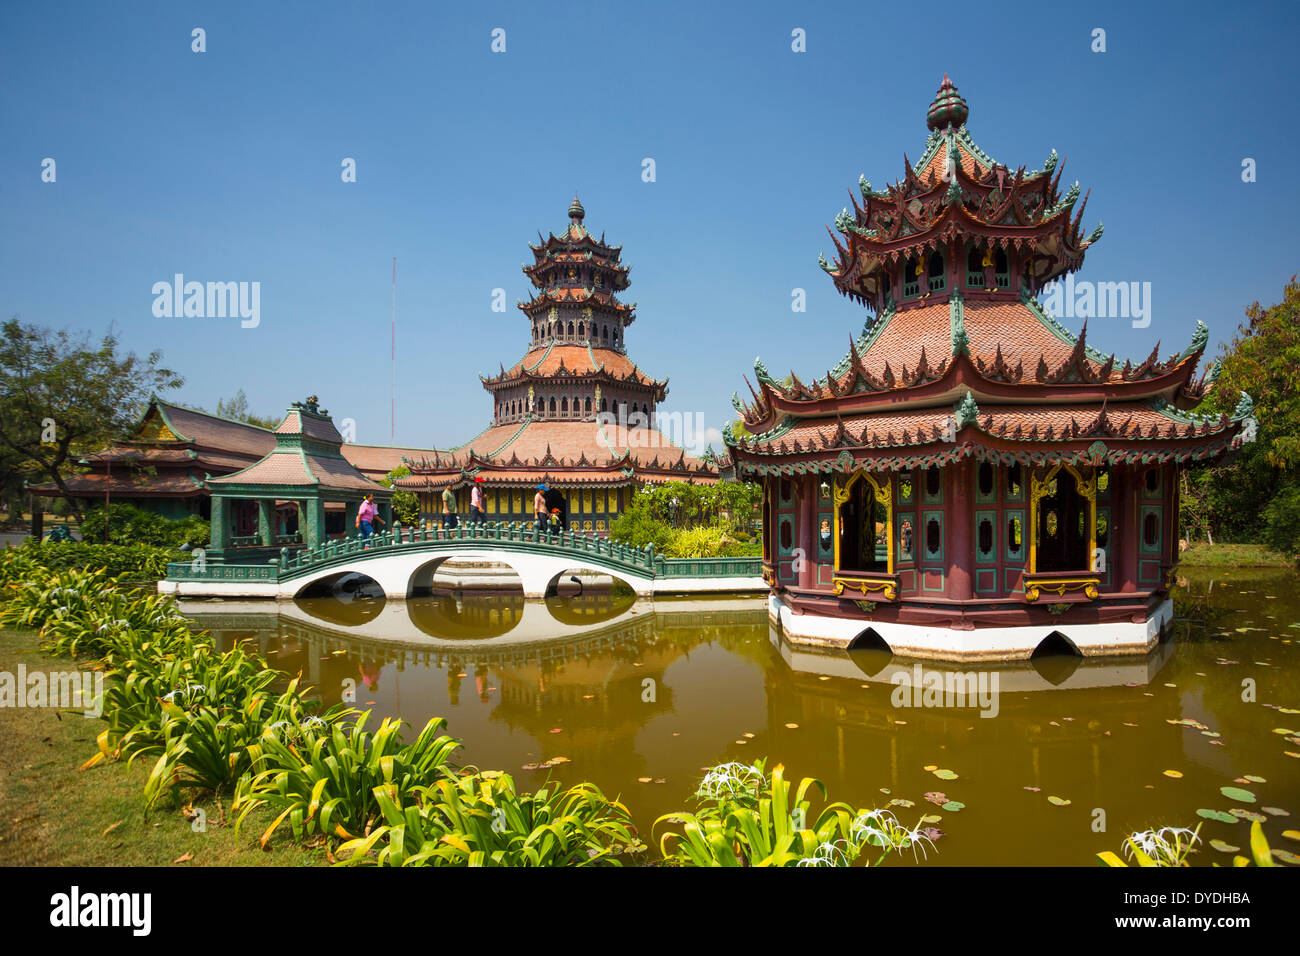 La Thaïlande, Asie, Bangkok, ancienne, Siam Park, le Phra Kaew, architecture, pont, de la culture, parc, étang, pavillon Banque D'Images